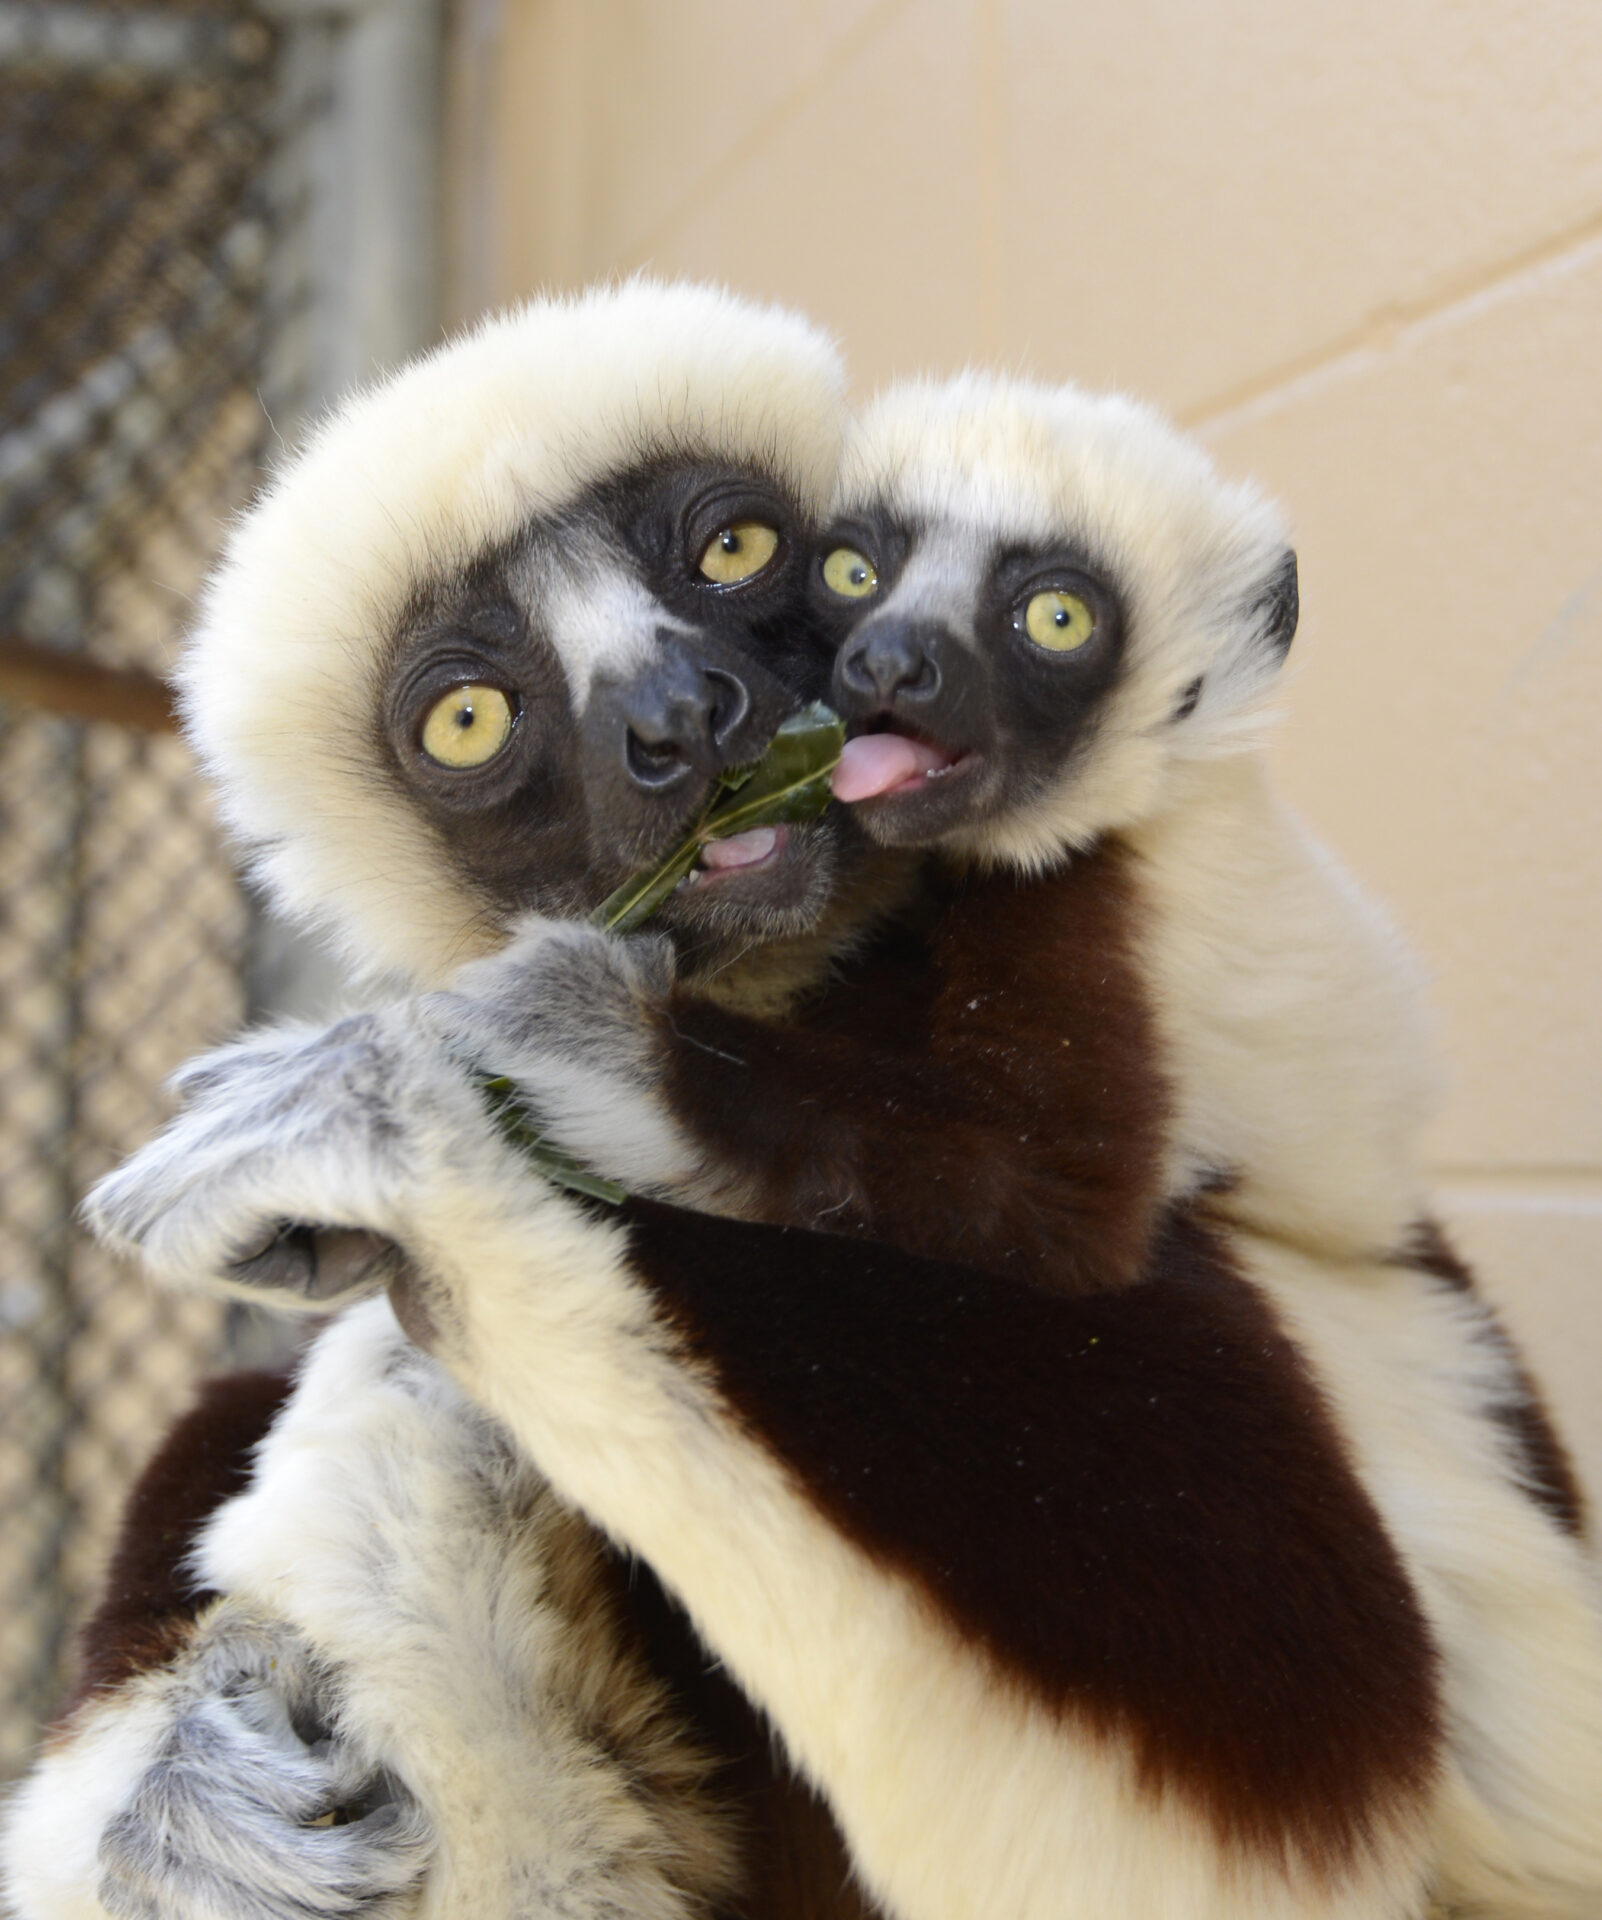 Meet the new lemur babies and their moms | Duke Lemur Center2704 x 3240